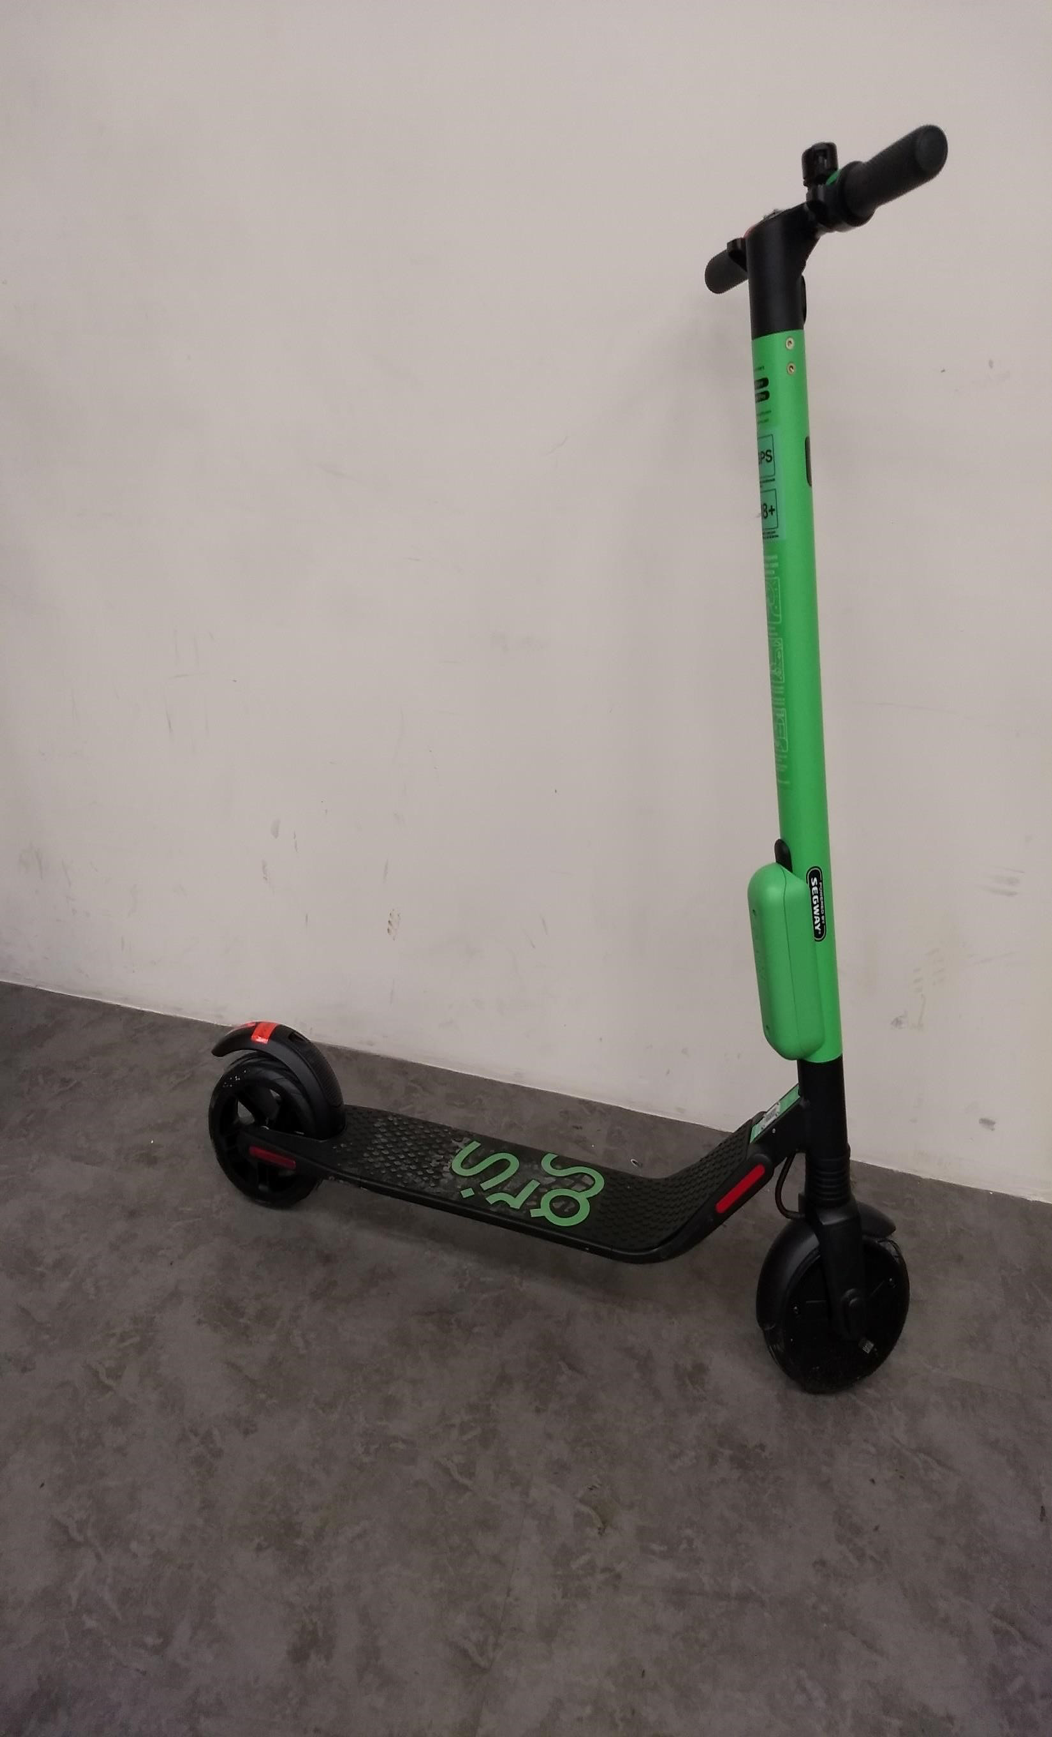 Aparentemente as scooters da Grow agora são LTE Cat M1 e NB-IoT